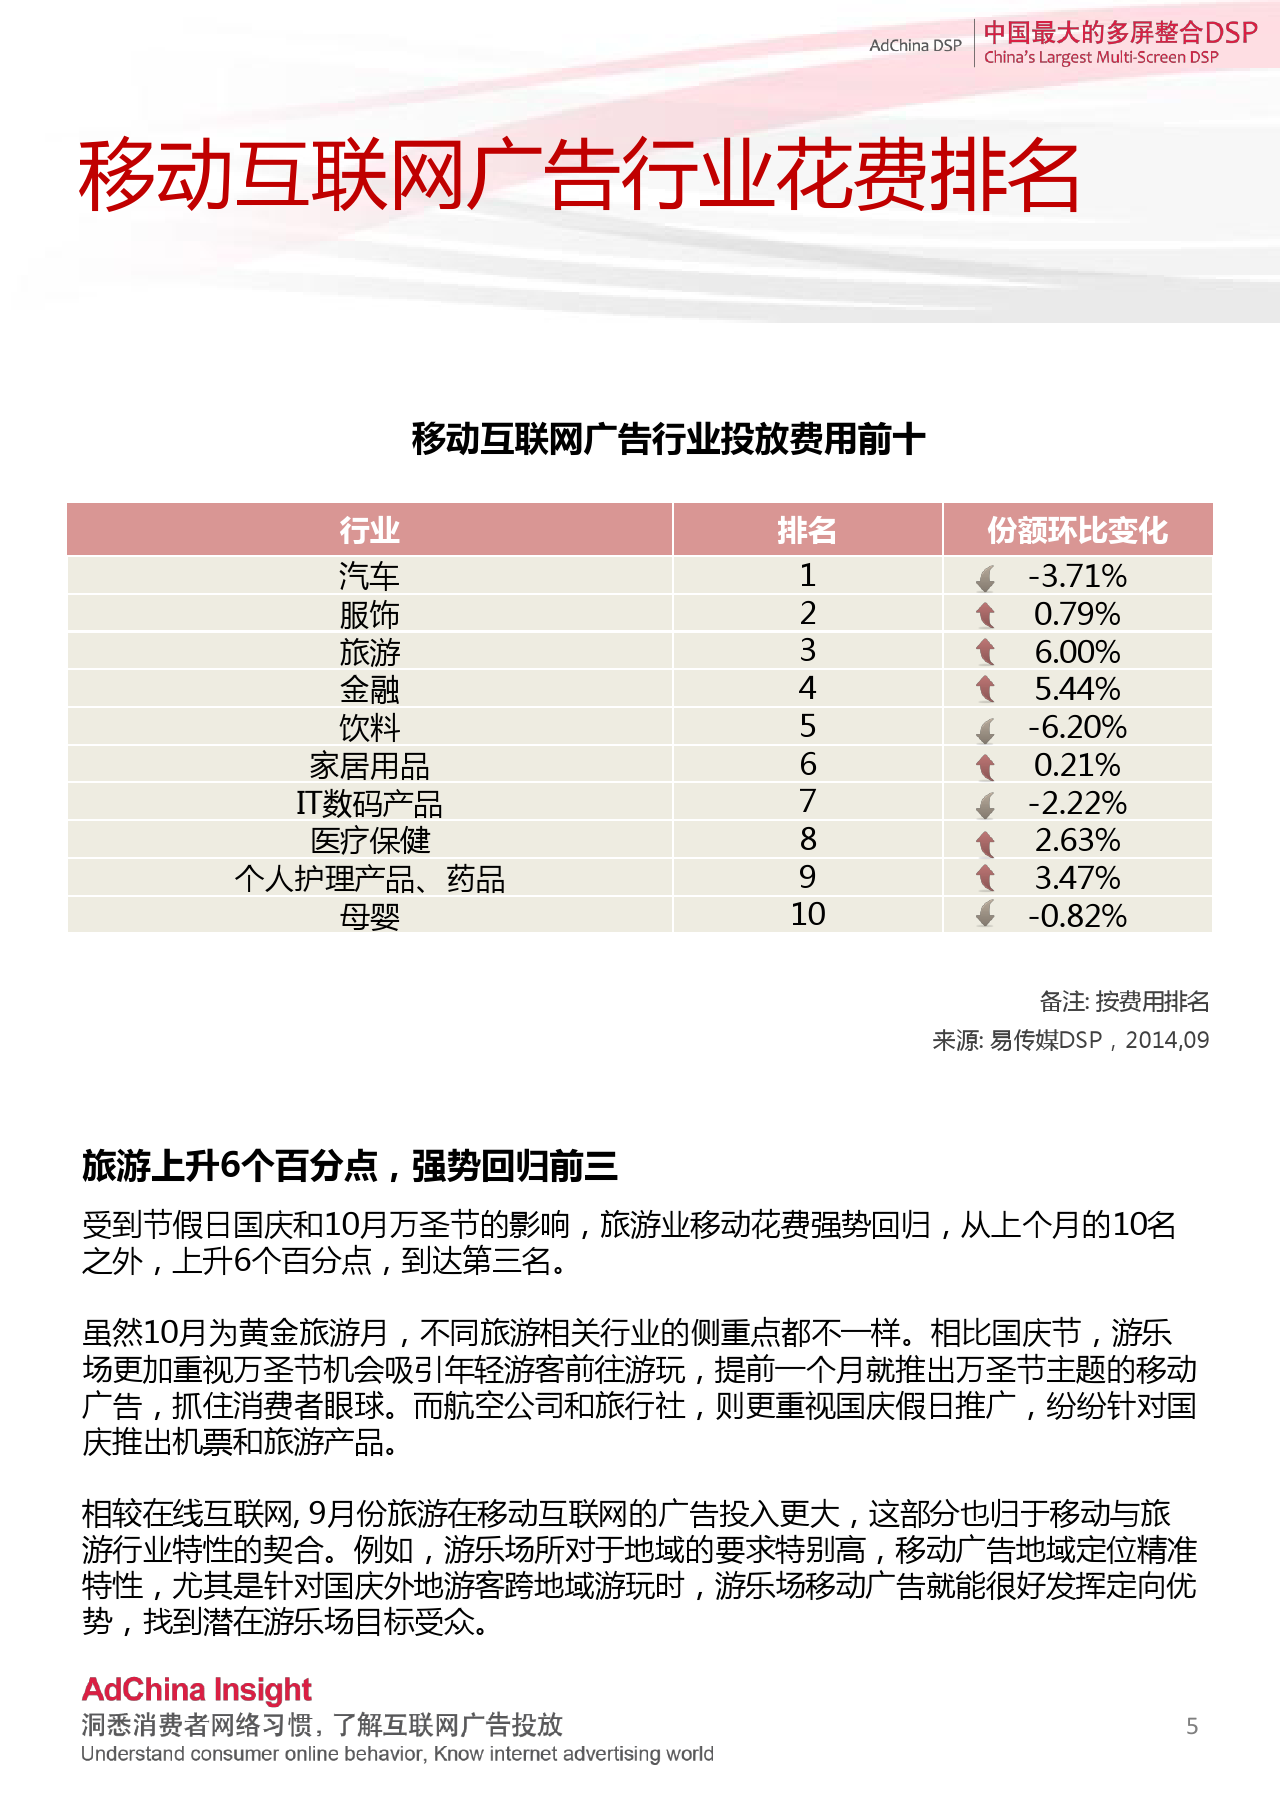 中国DSP行业跨屏数据盘点  9月份_000005